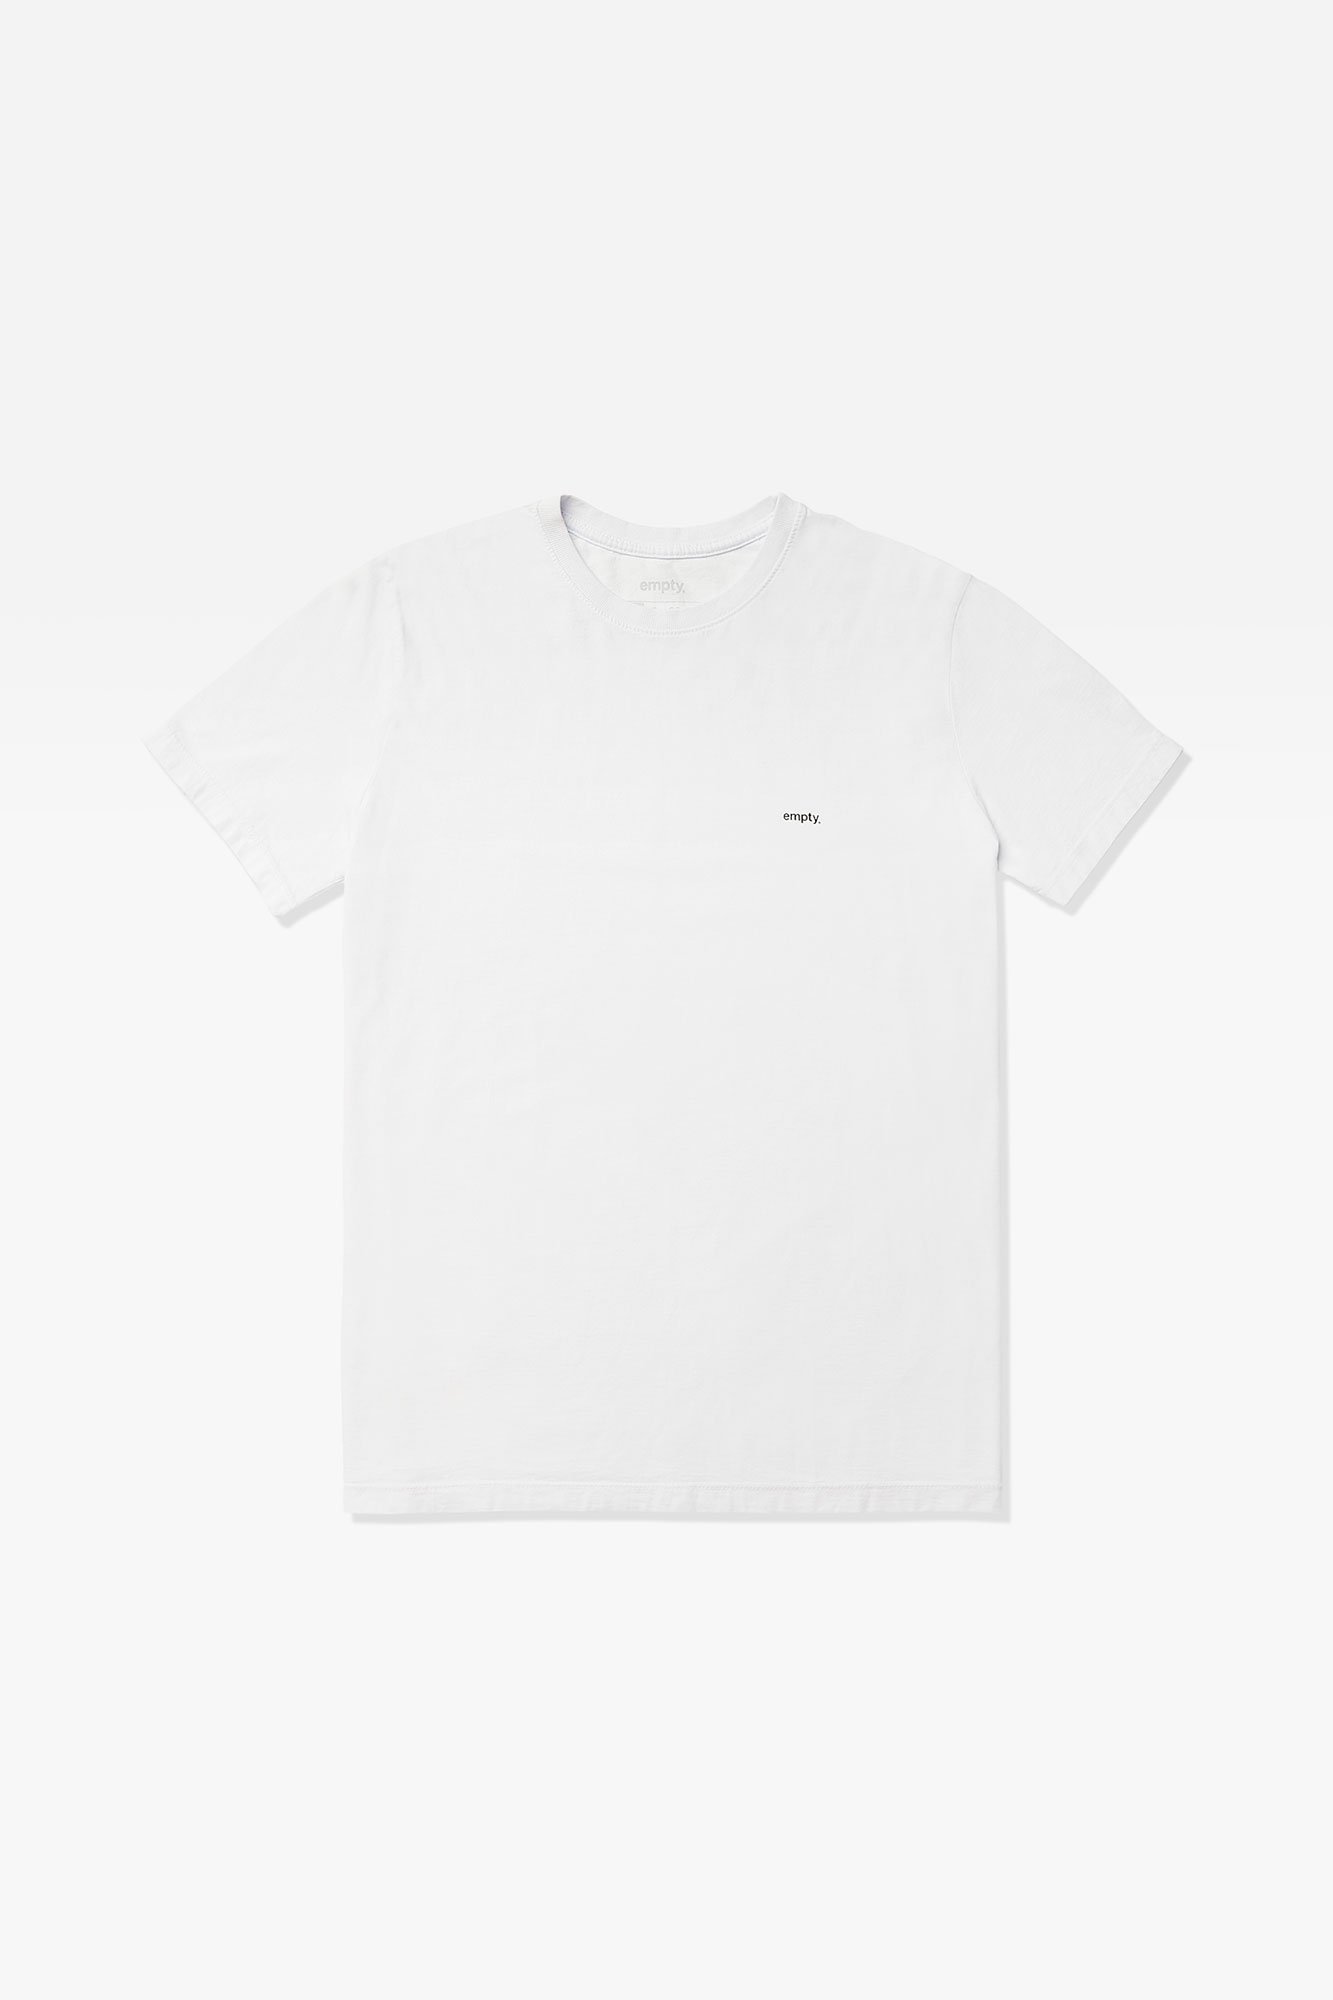 04 camiseta emptyco branco